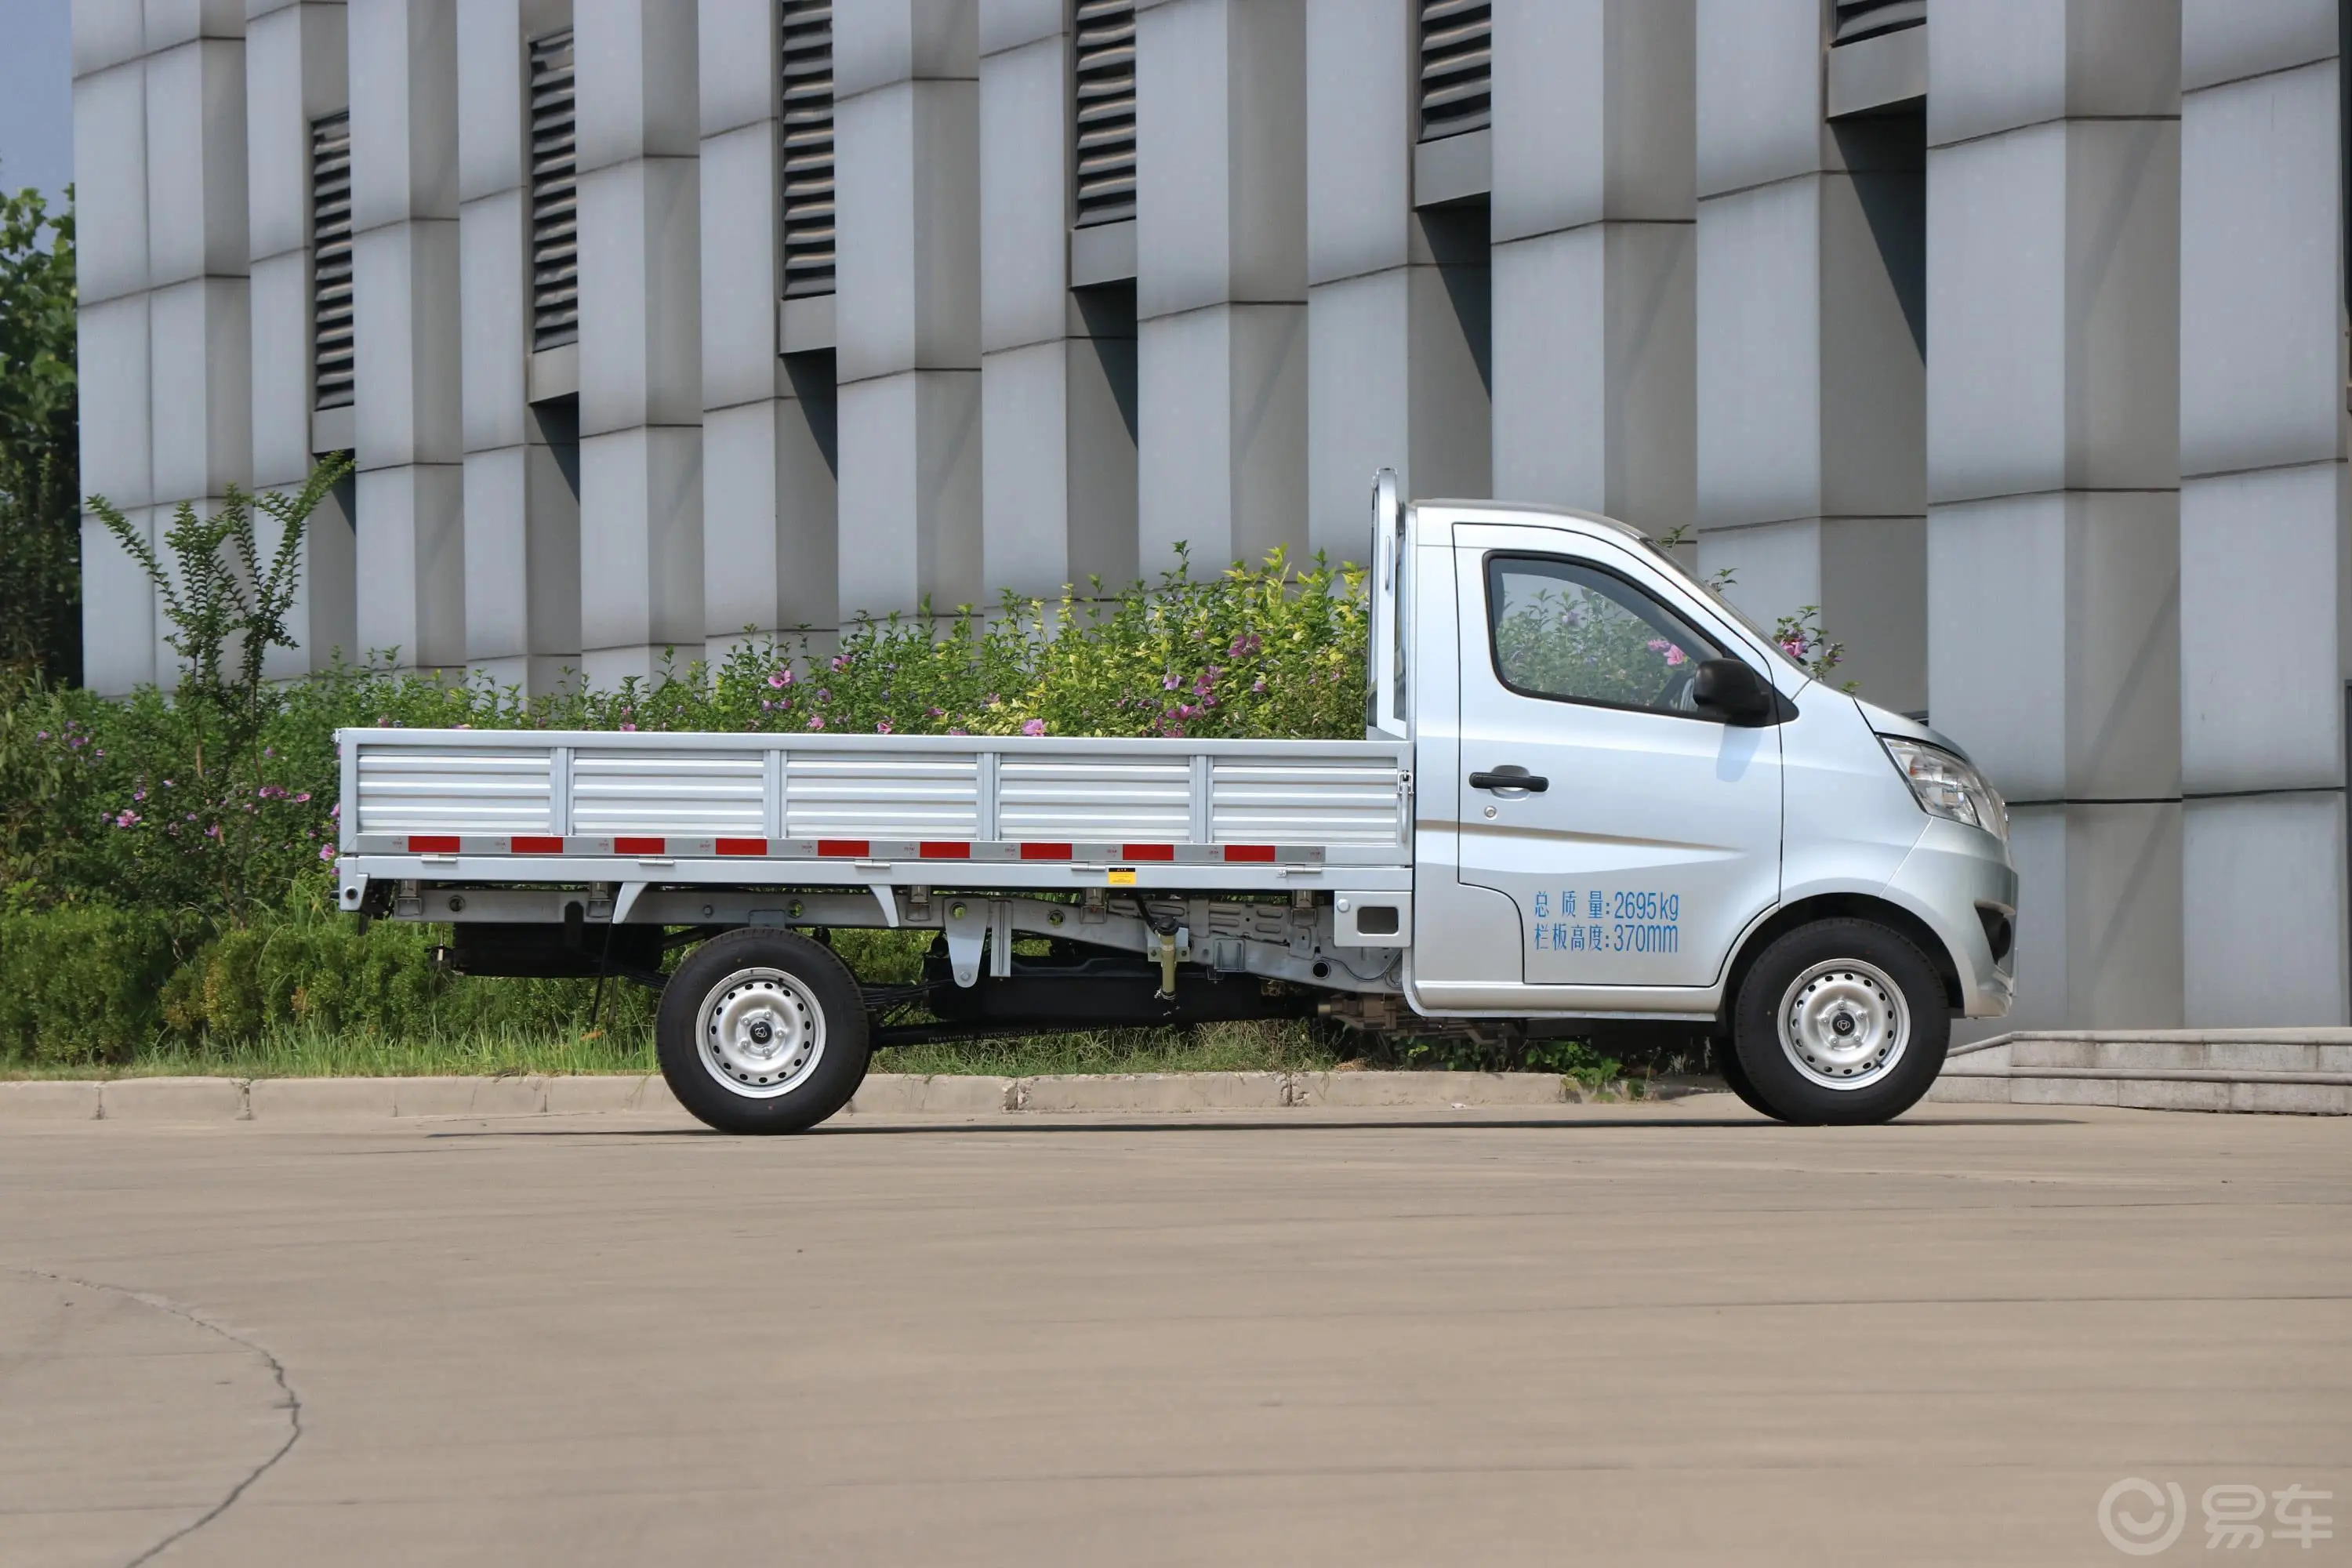 长安星卡L系列1.5L 手动 单排 货车标准型 额载1355kg 国V正侧车头向右水平